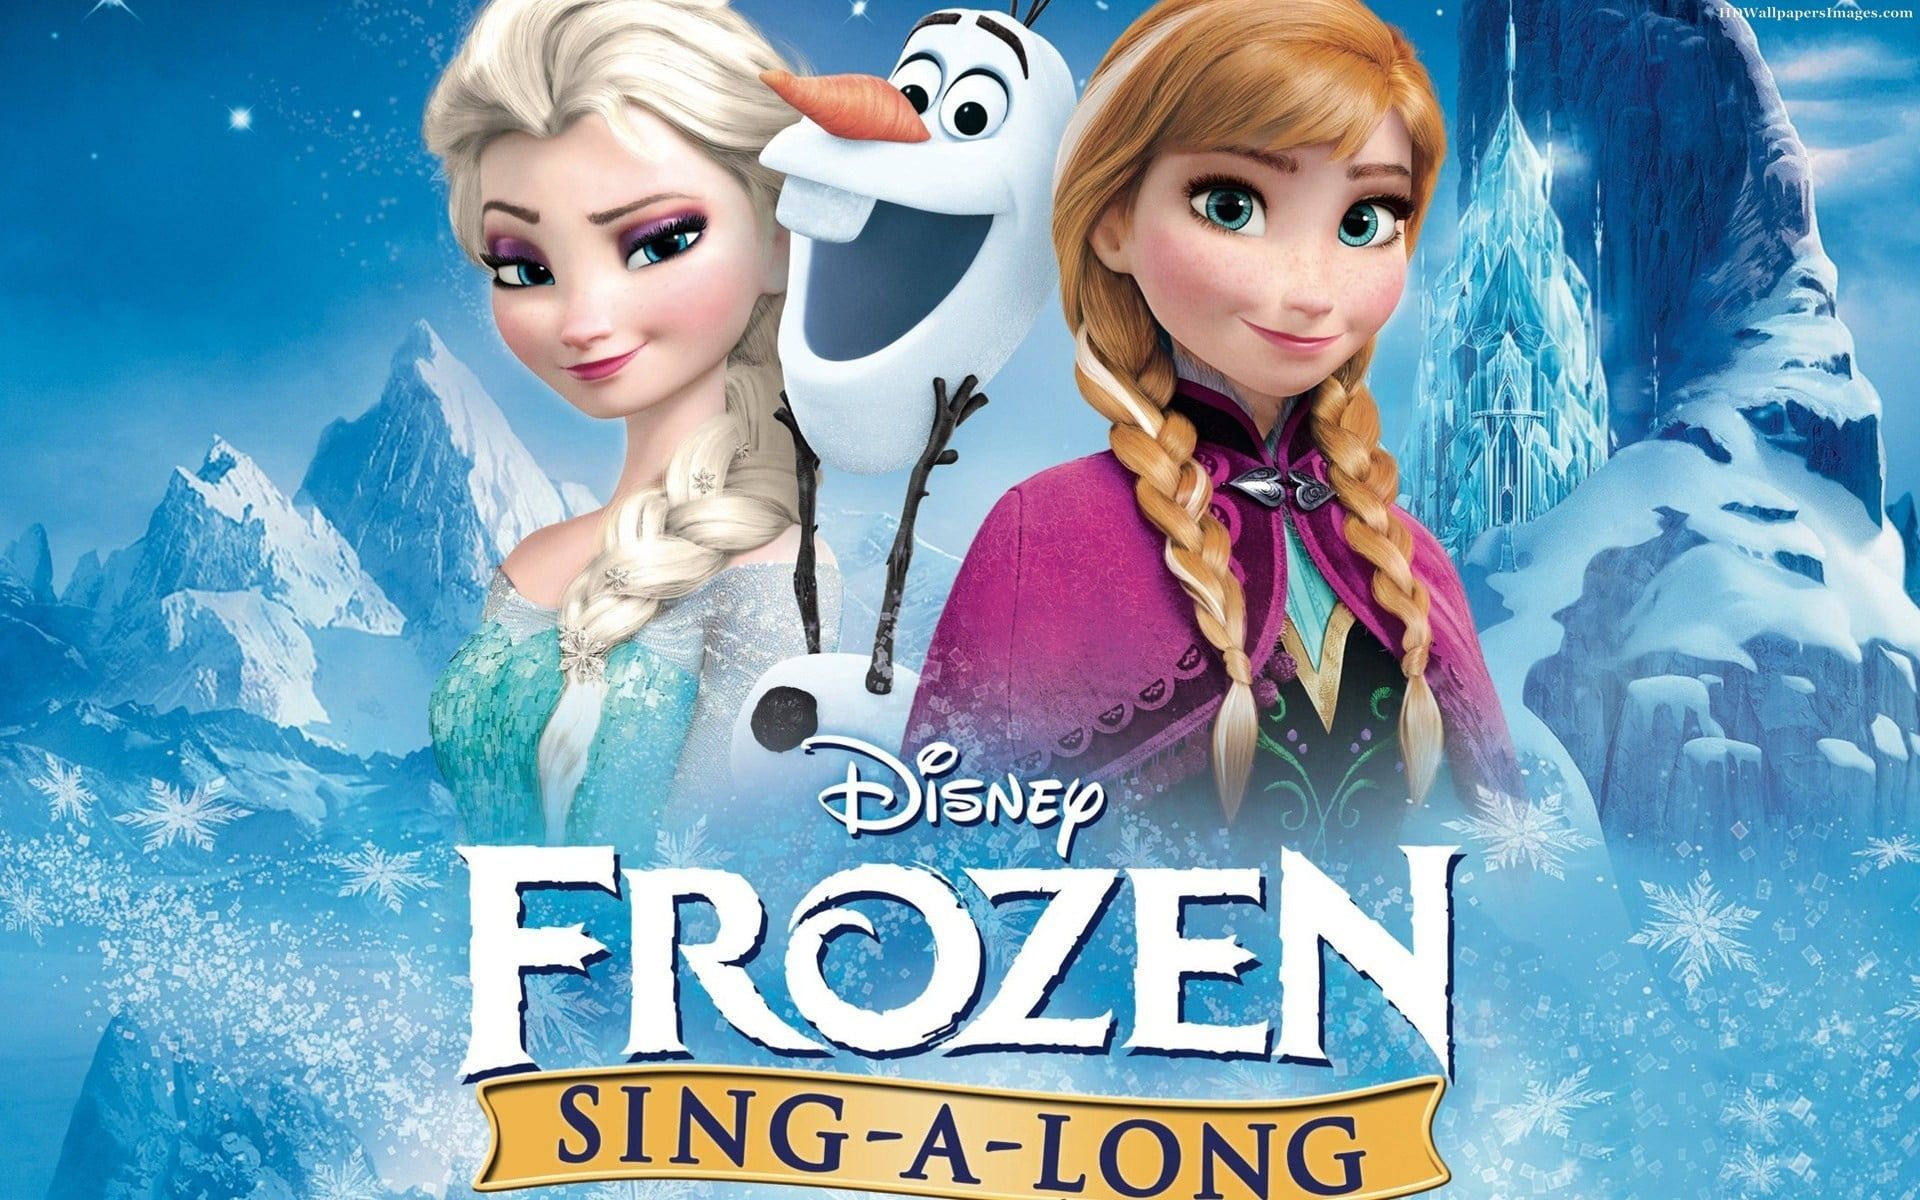 Disney Frozen Elsa and Anna wallpaper, Frozen (movie), Olaf, Princess Anna, Princess Elsa HD wallpaper